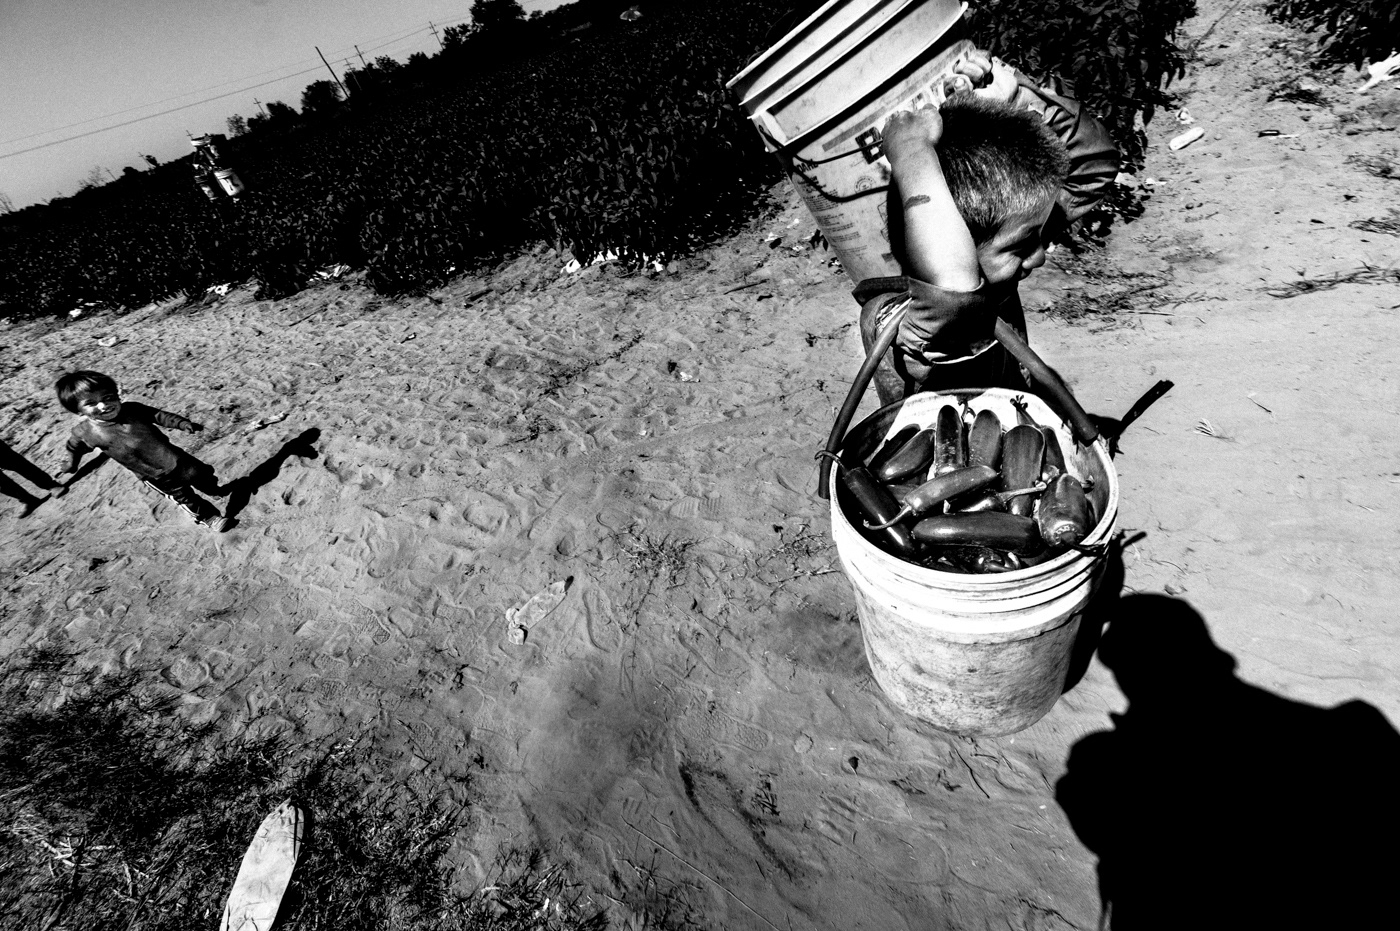 Chilli chillies matt mawson mexico migrant labor sinaloa documentrayphotography